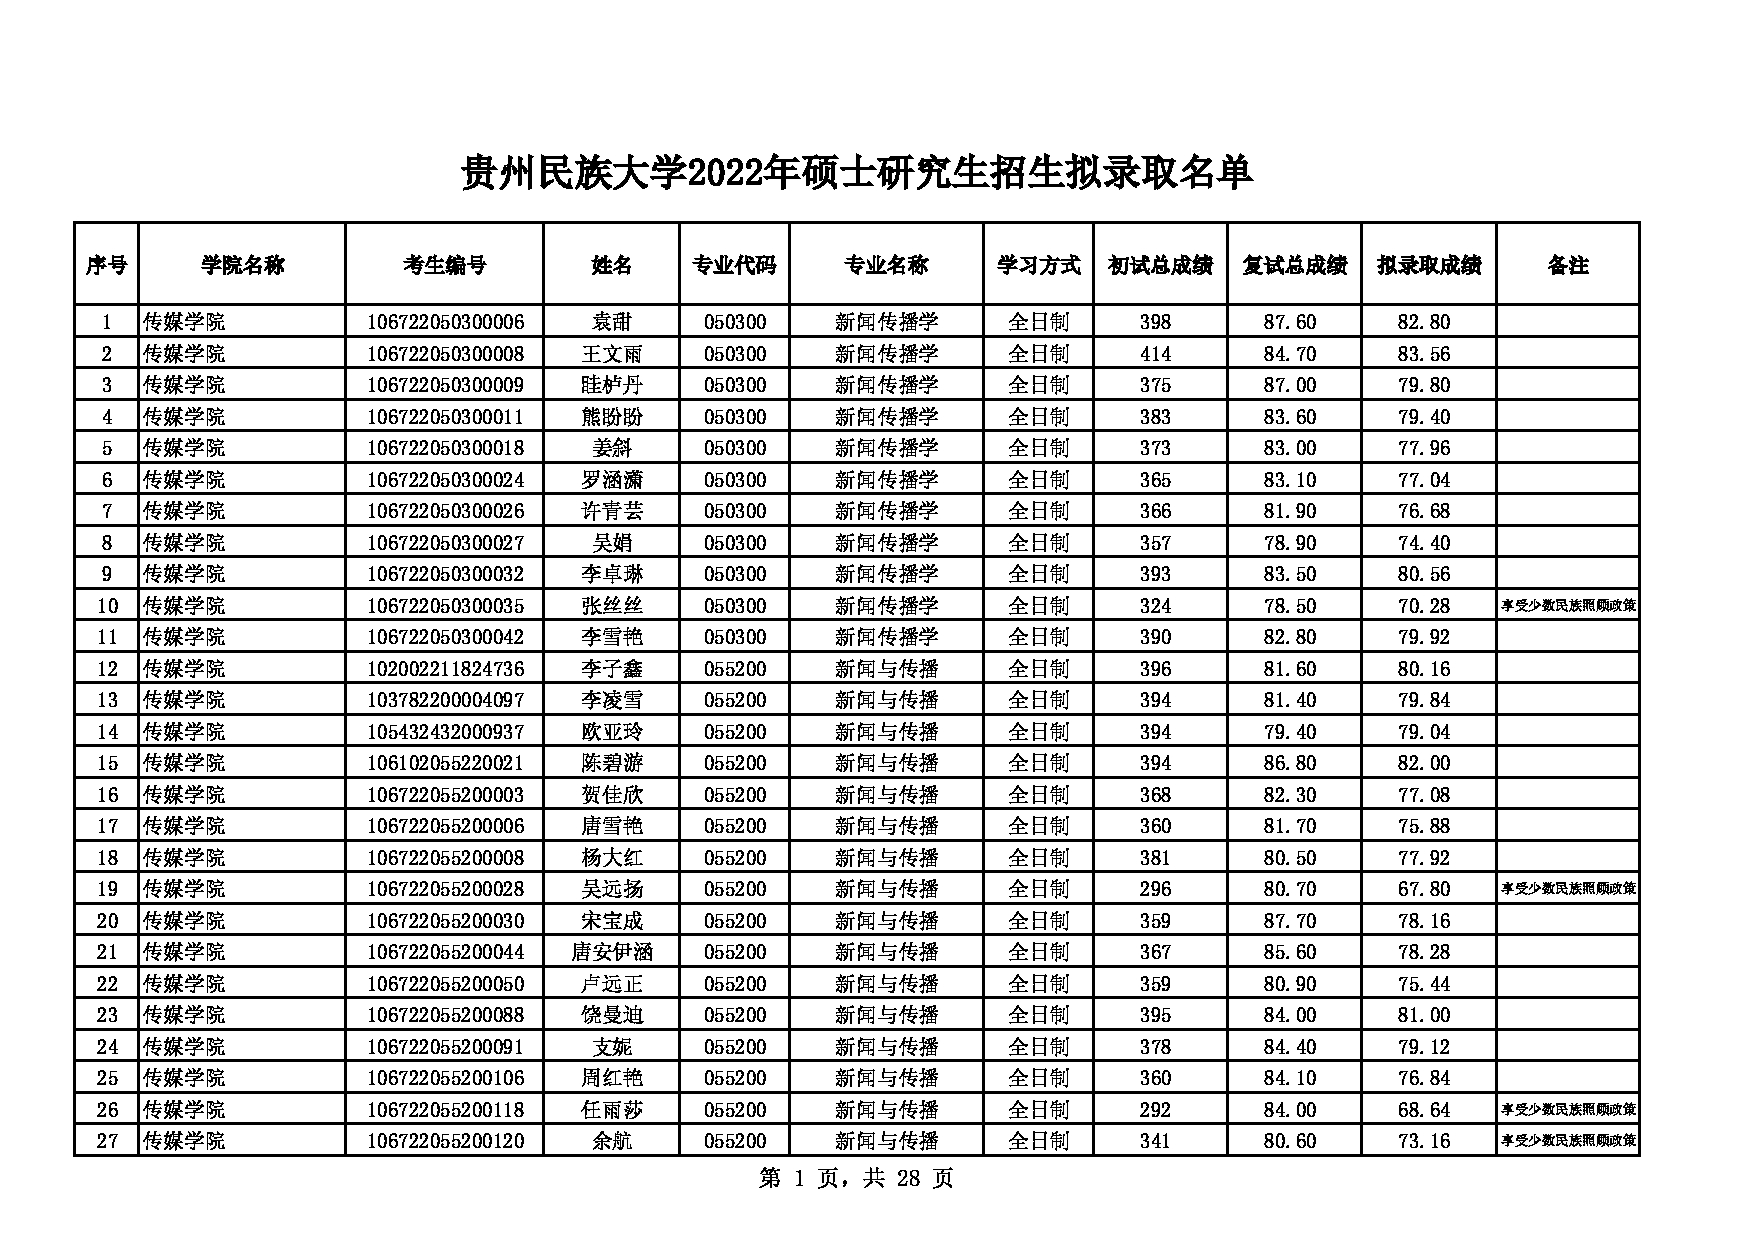 2022考研拟录取名单：贵州民族大学2022年硕士研究生招生拟录取名单第1页